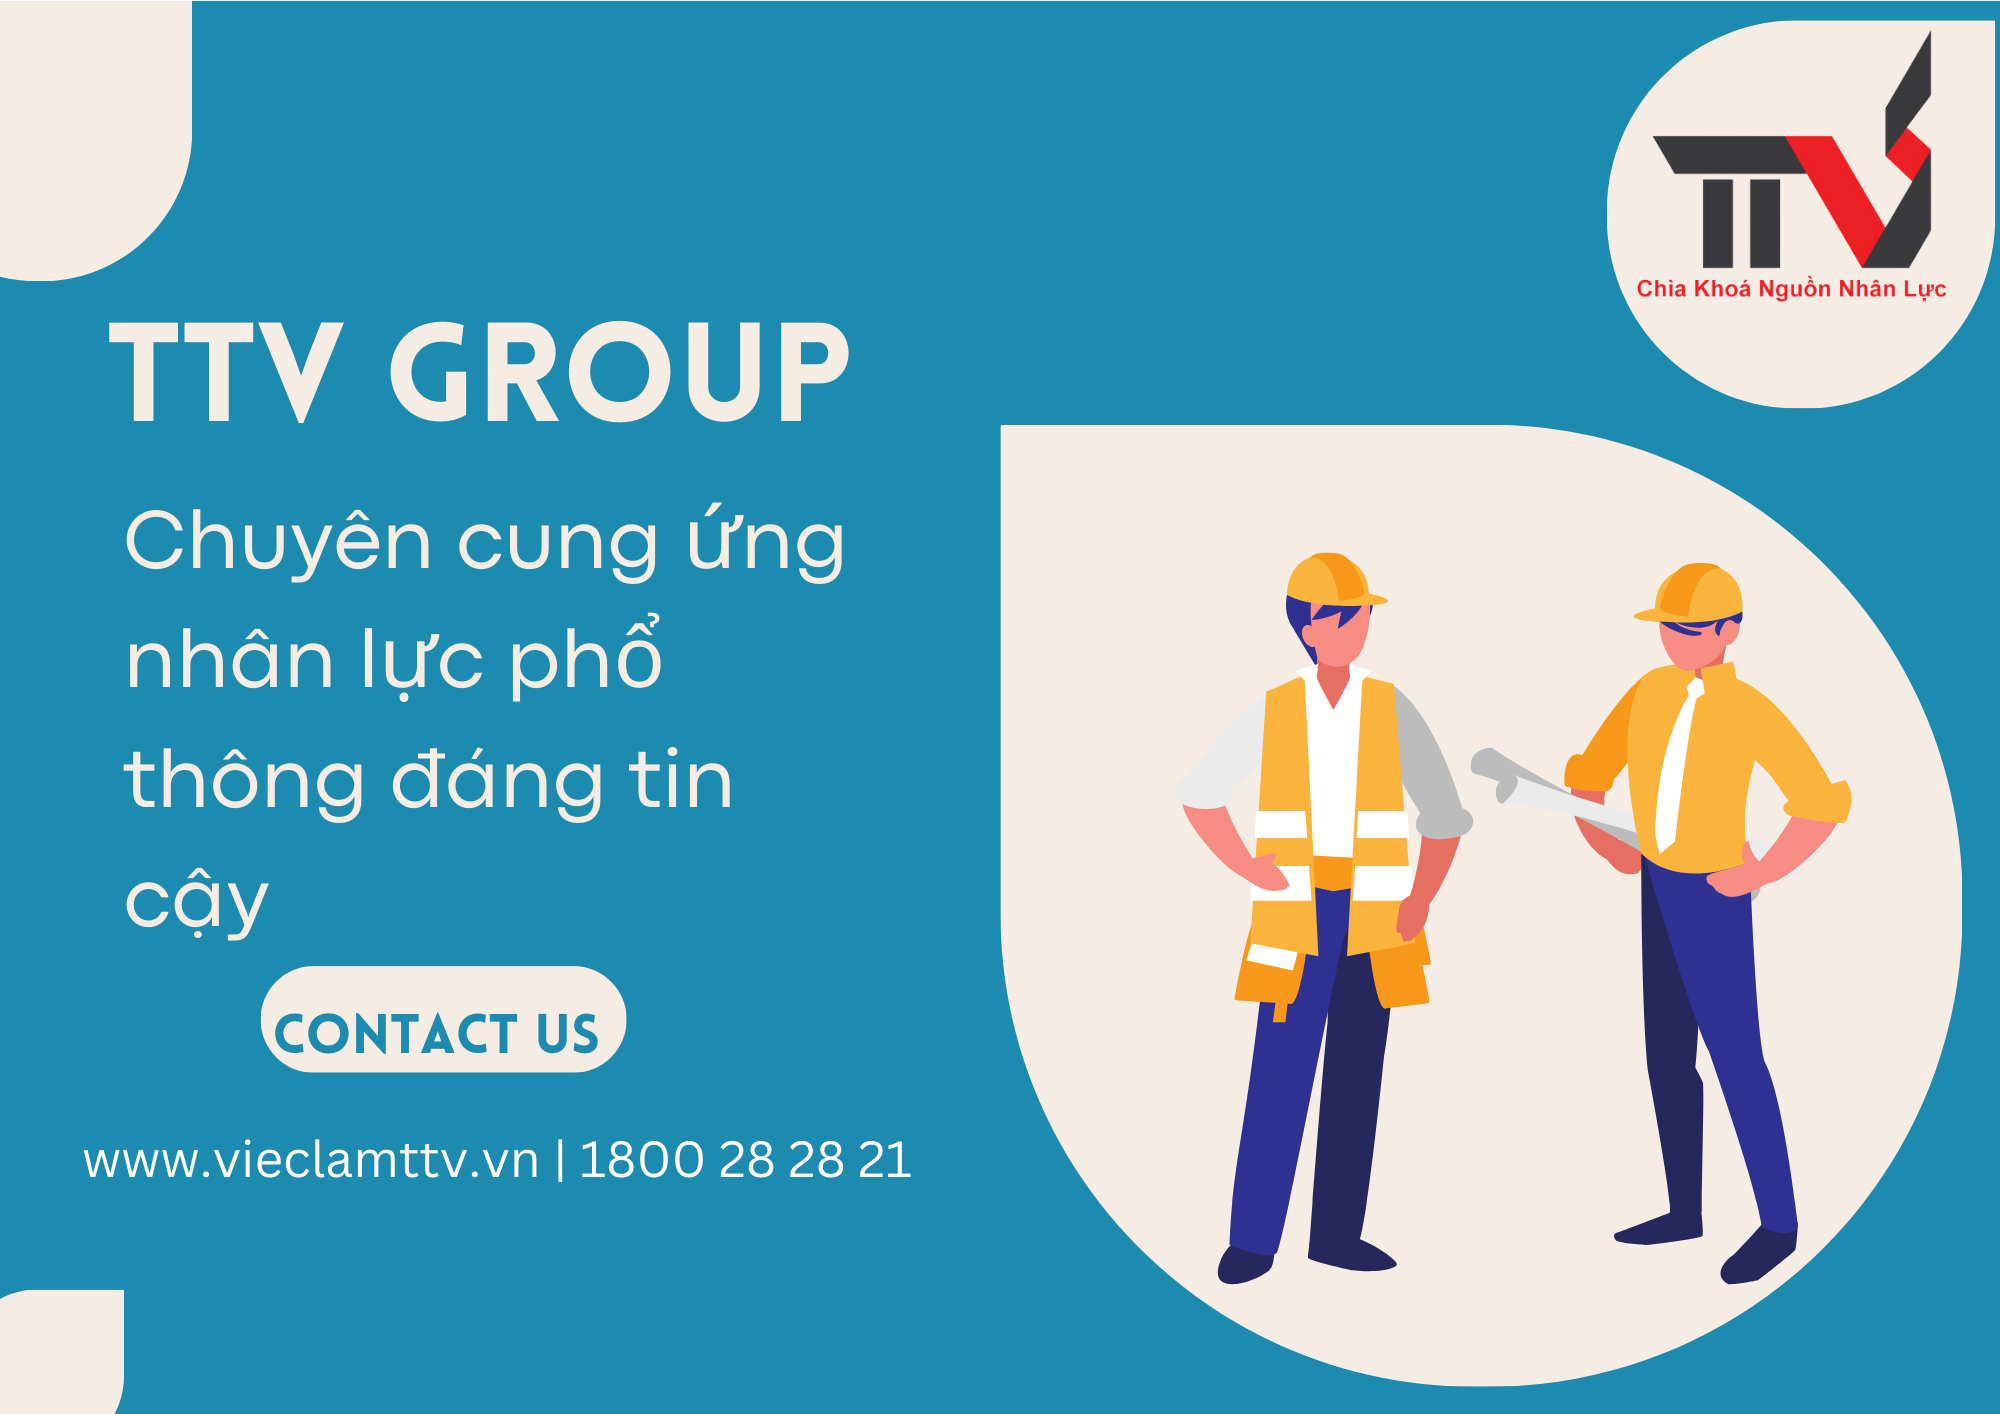 TTV Group - Chuyên Cung Ứng Nhân Lực Phổ Thông Đáng Tin Cậy tại Khu Vực Hồ Chí Minh, Bình Dương và Đồng Nai